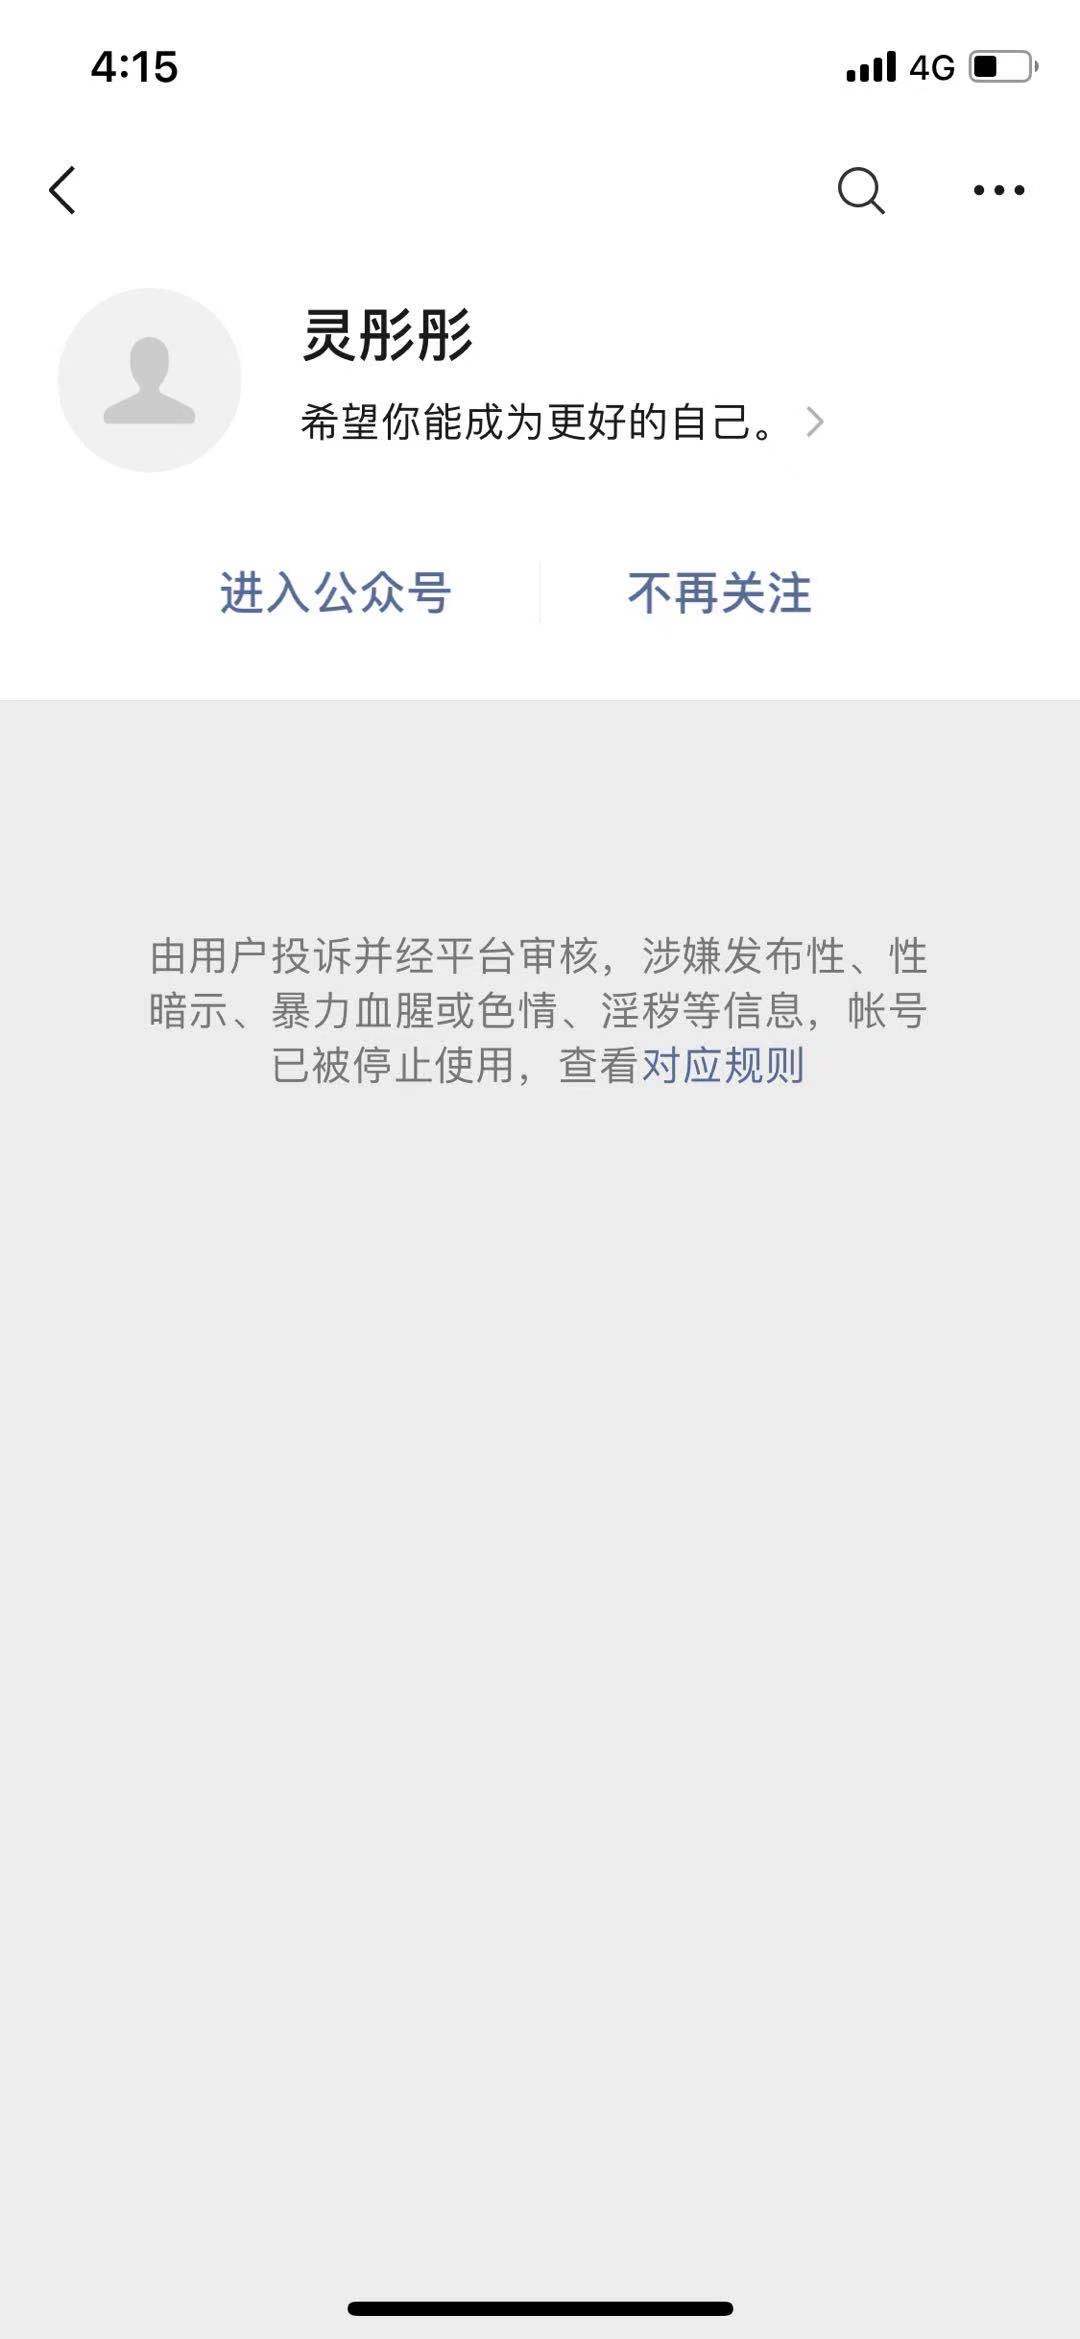 灵彤彤微信公众账号微信页面显示已停用